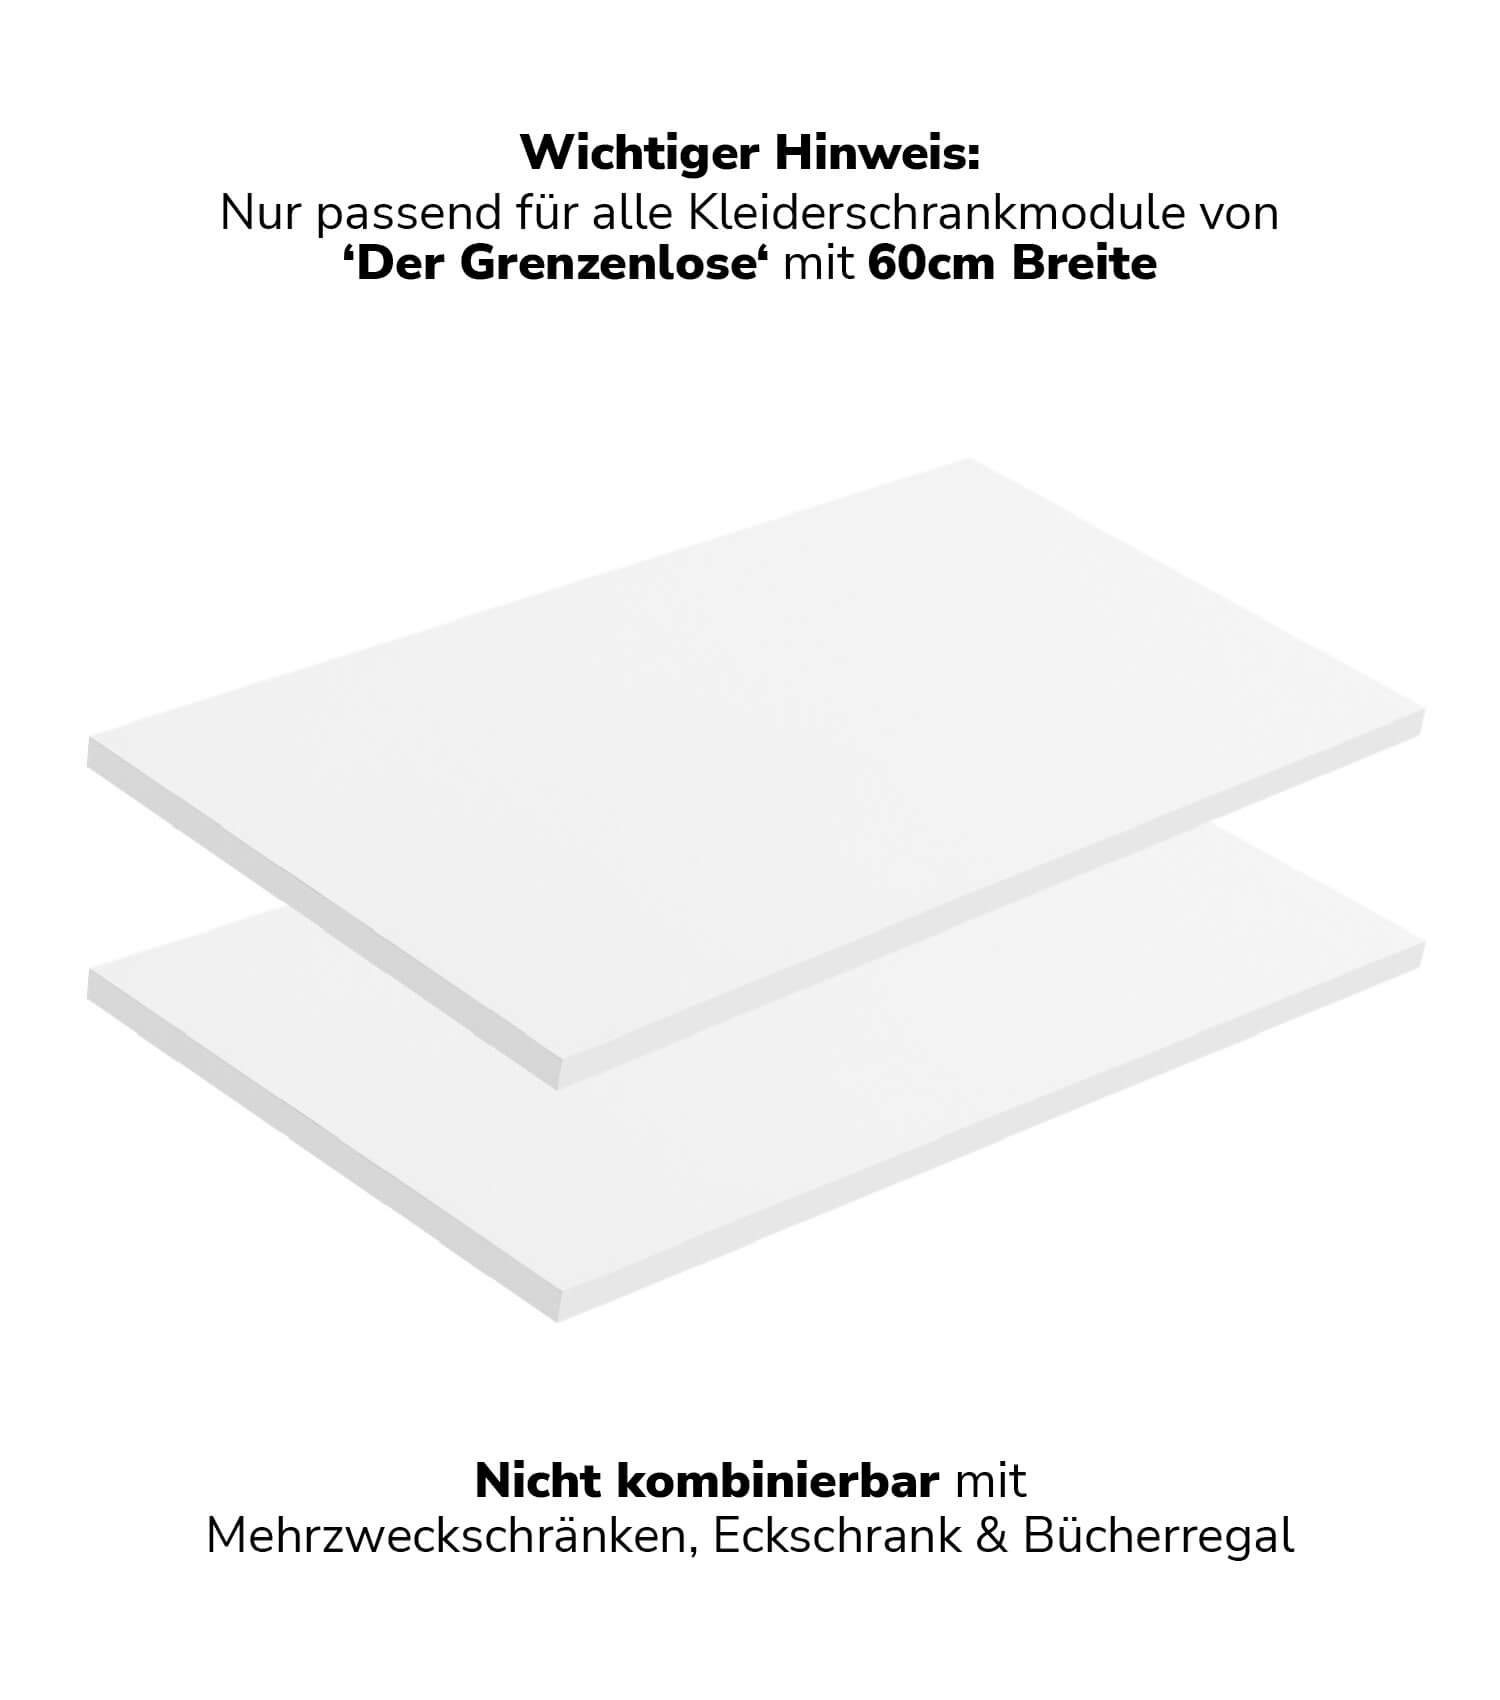 mokebo Einlegeboden Die Ableger mit (2er-Set), für Kleiderschrank Weiß Breite Grenzenlose' 60cm Böden in 'Der